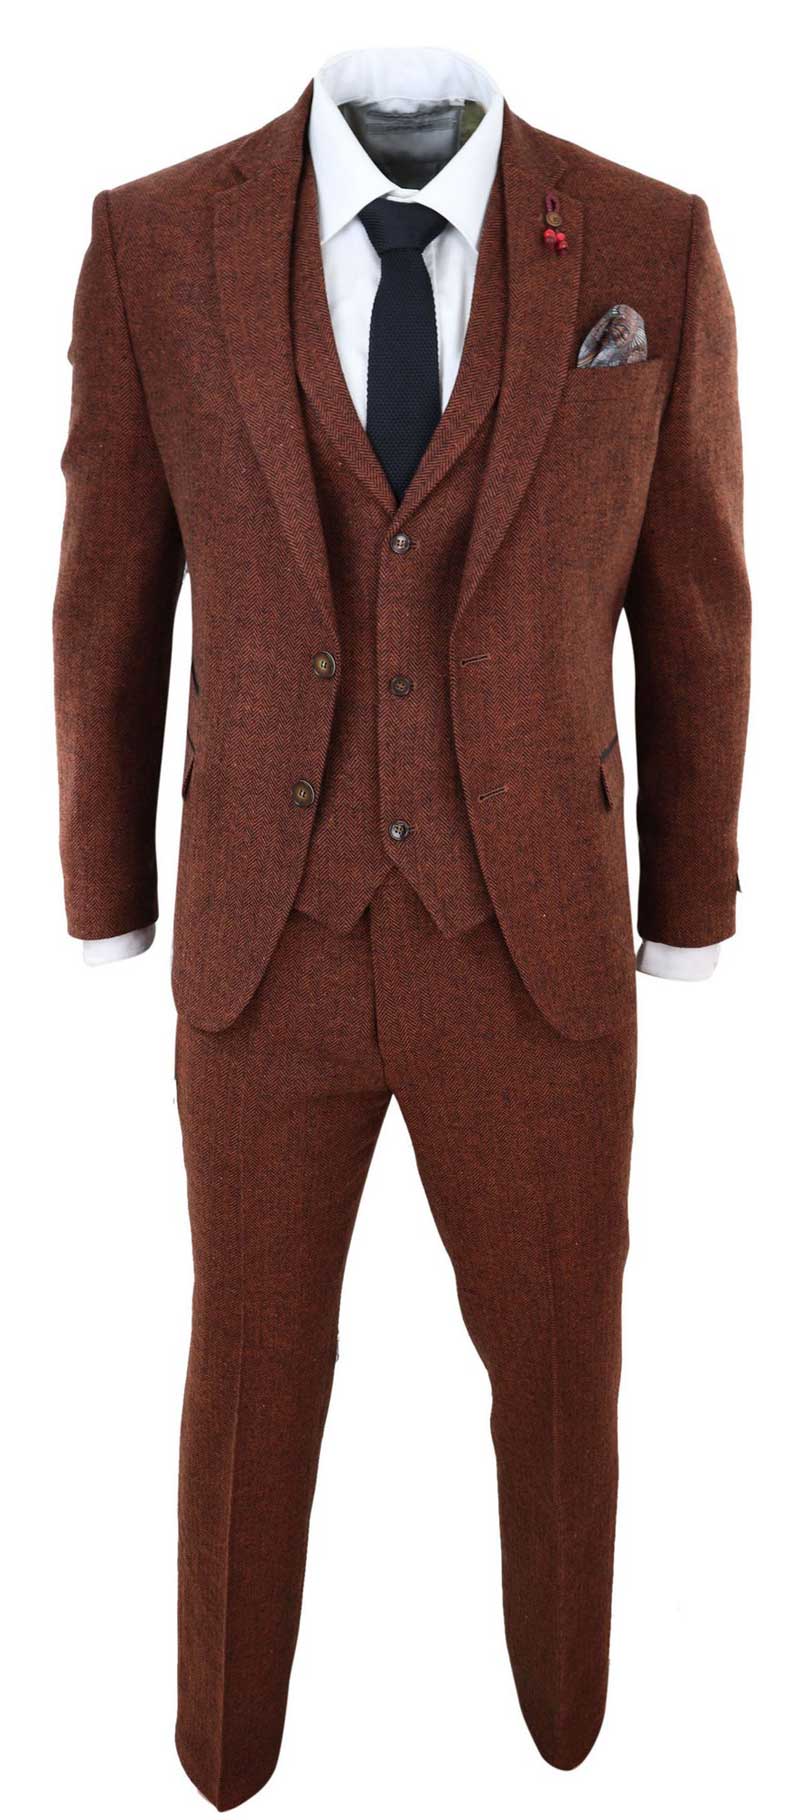 Rust Herringbone Tweed 3 Piece Suit: Buy Online - Happy Gentleman